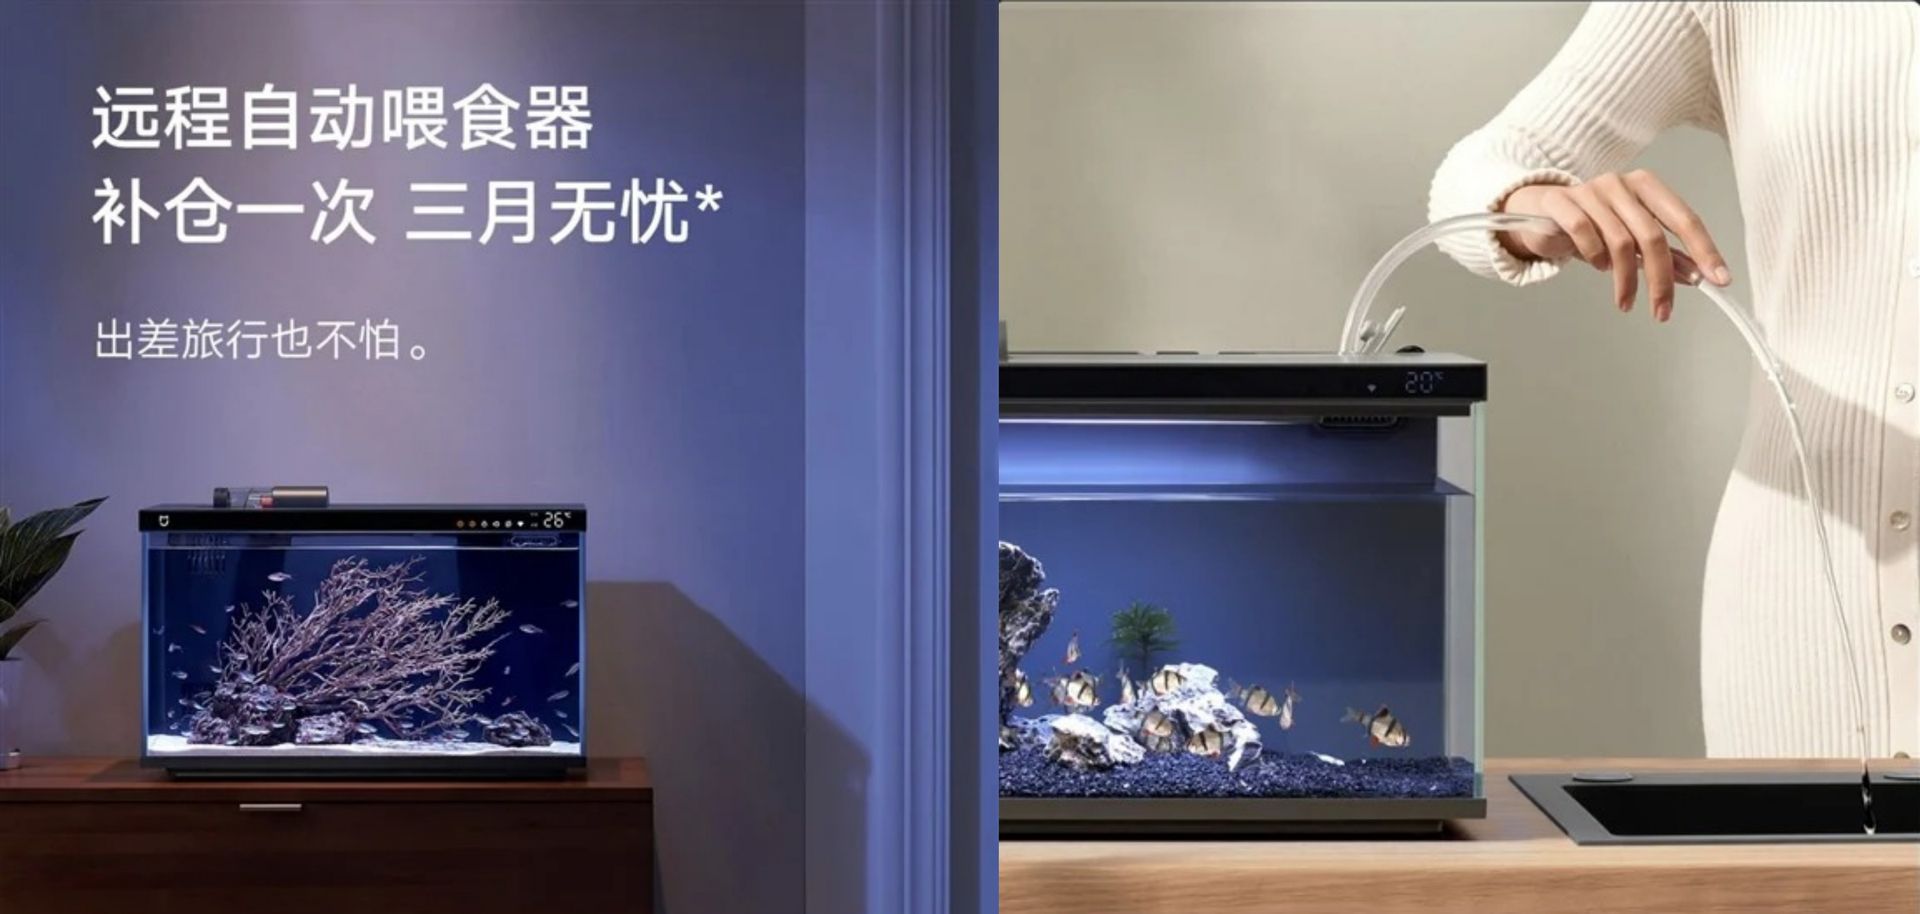 La nueva pecera inteligente de Xiaomi permite dar de comer a los peces vía remota